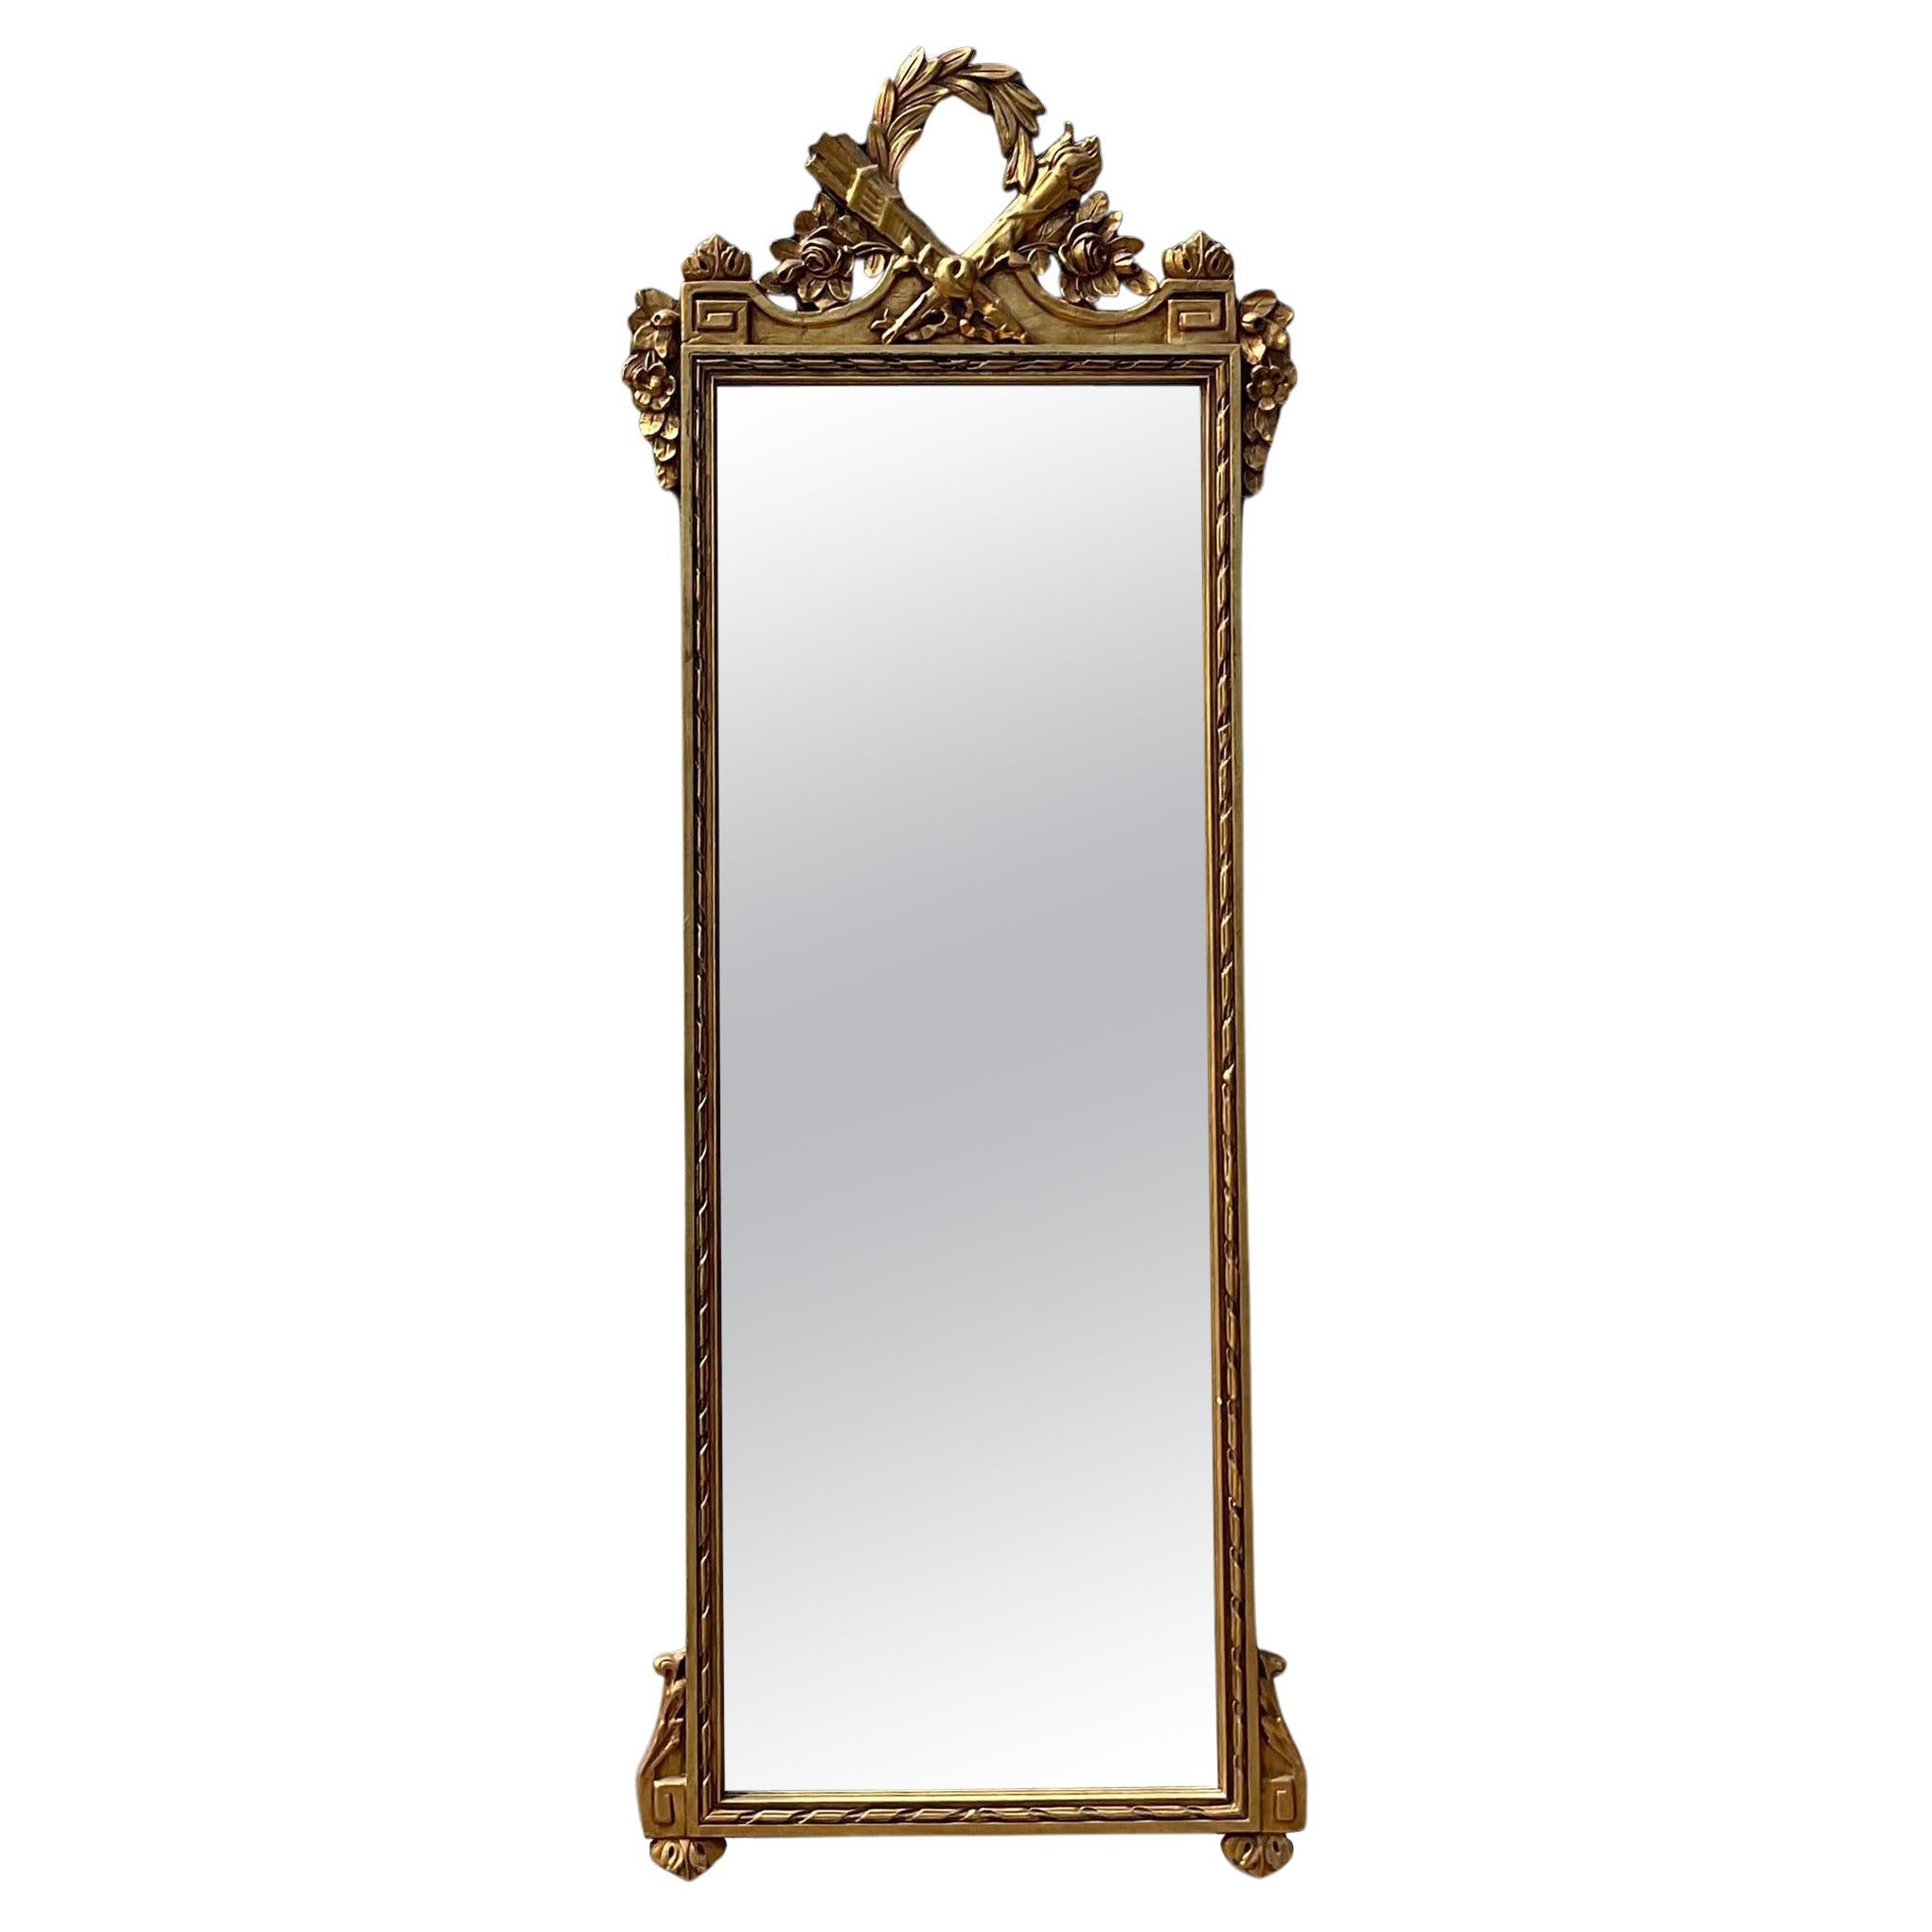 Vieux miroir Regency monumental doré à clé grecque